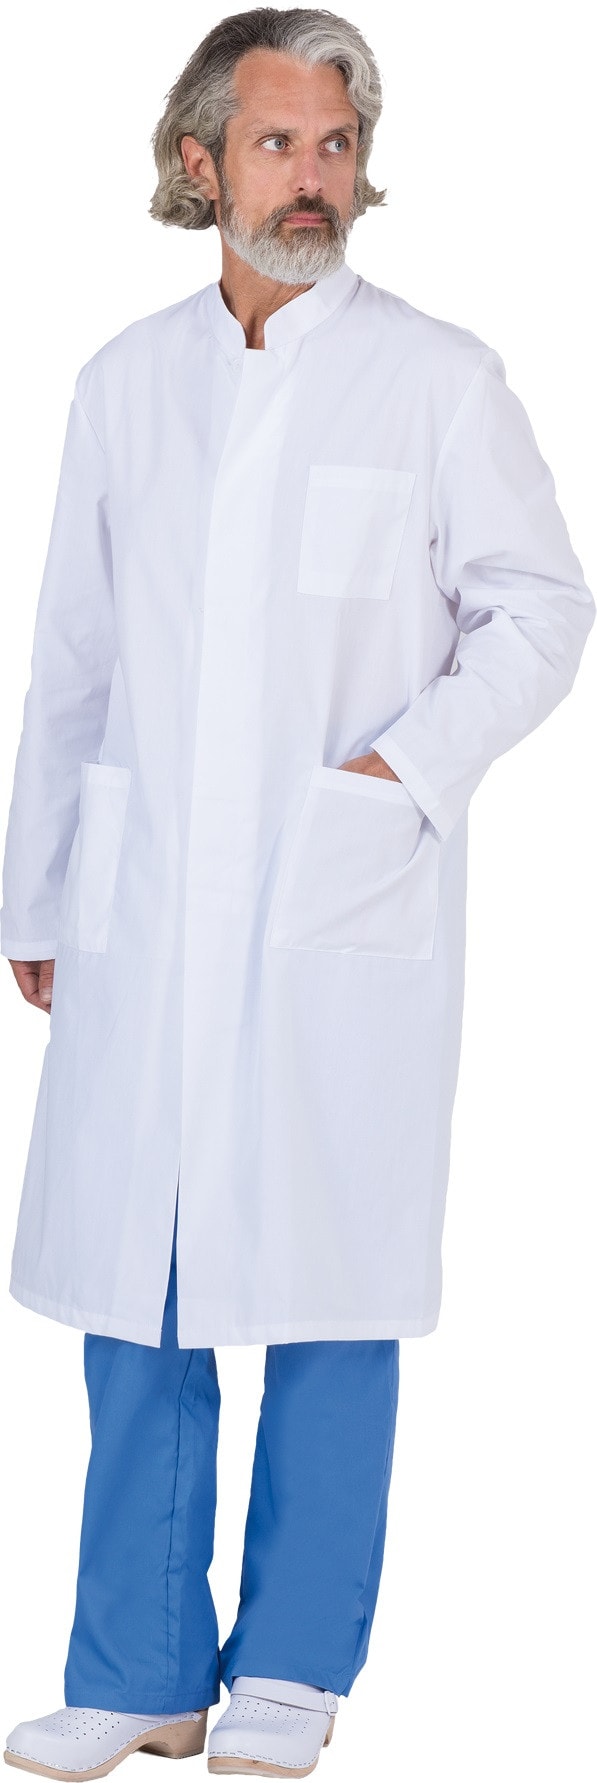 Pánský zdravotnický plášť MOSSO